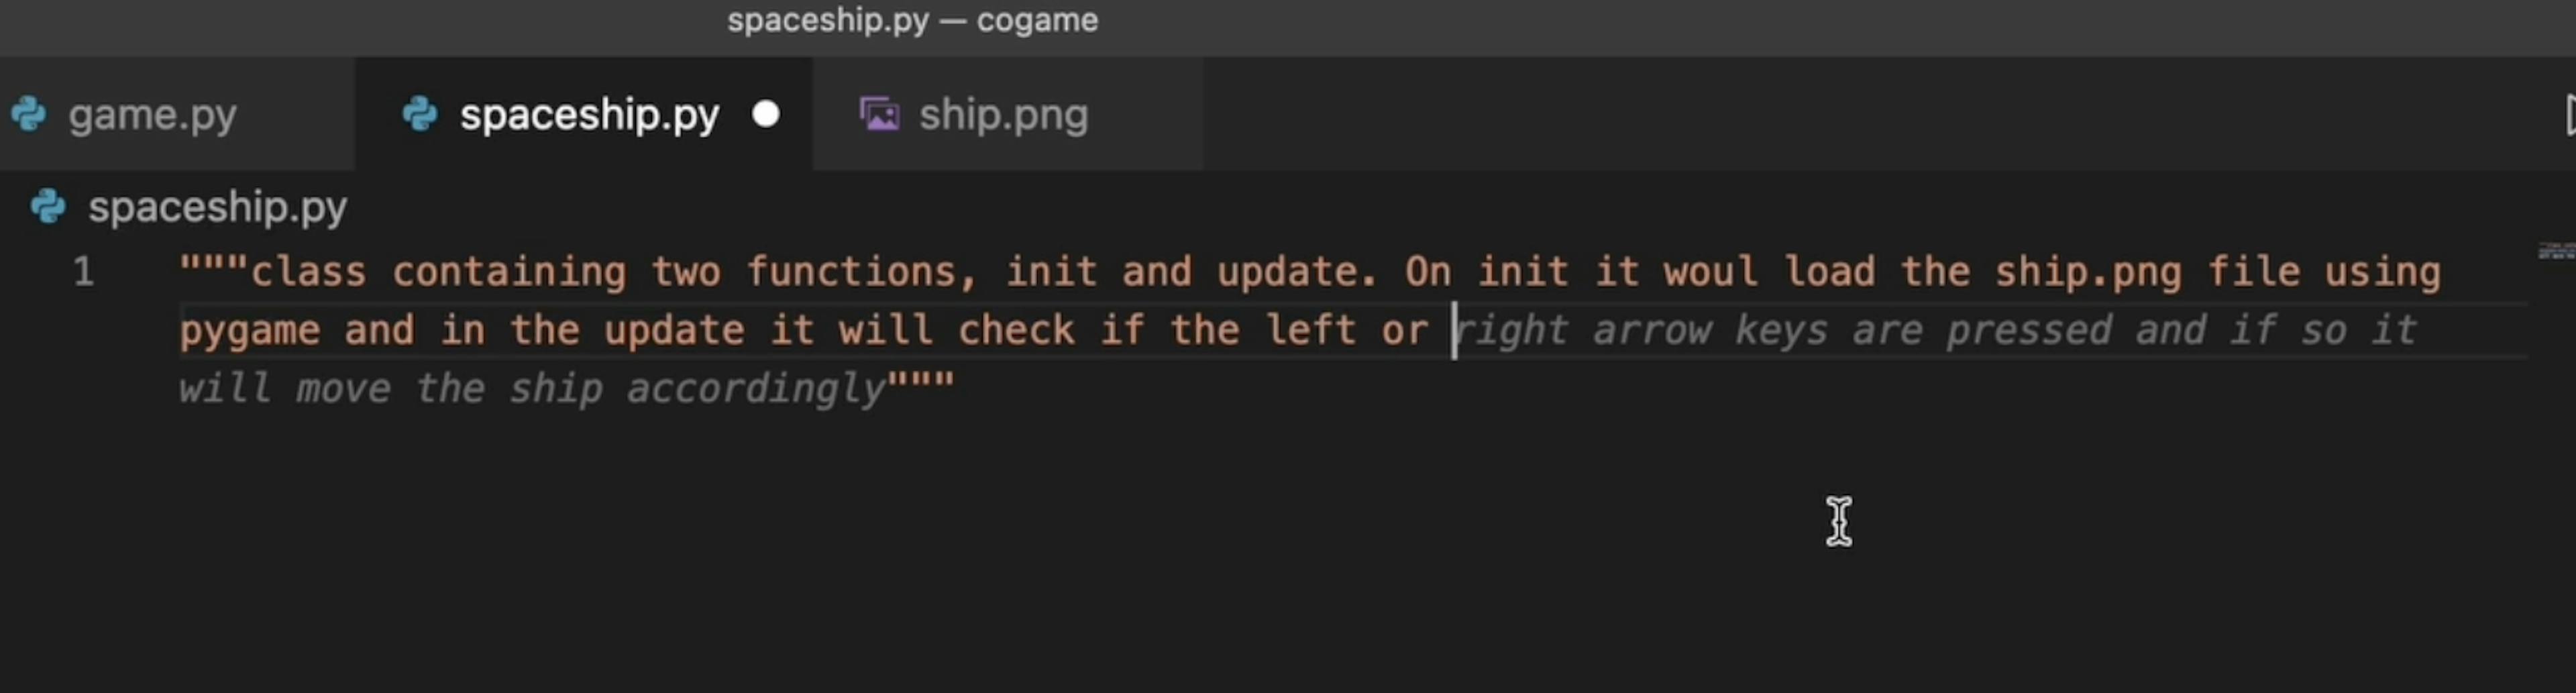 Copilot न केवल कोड लिखता है, बल्कि यह भी सुझाव देता है कि आप इसे क्या करना चाहते हैं